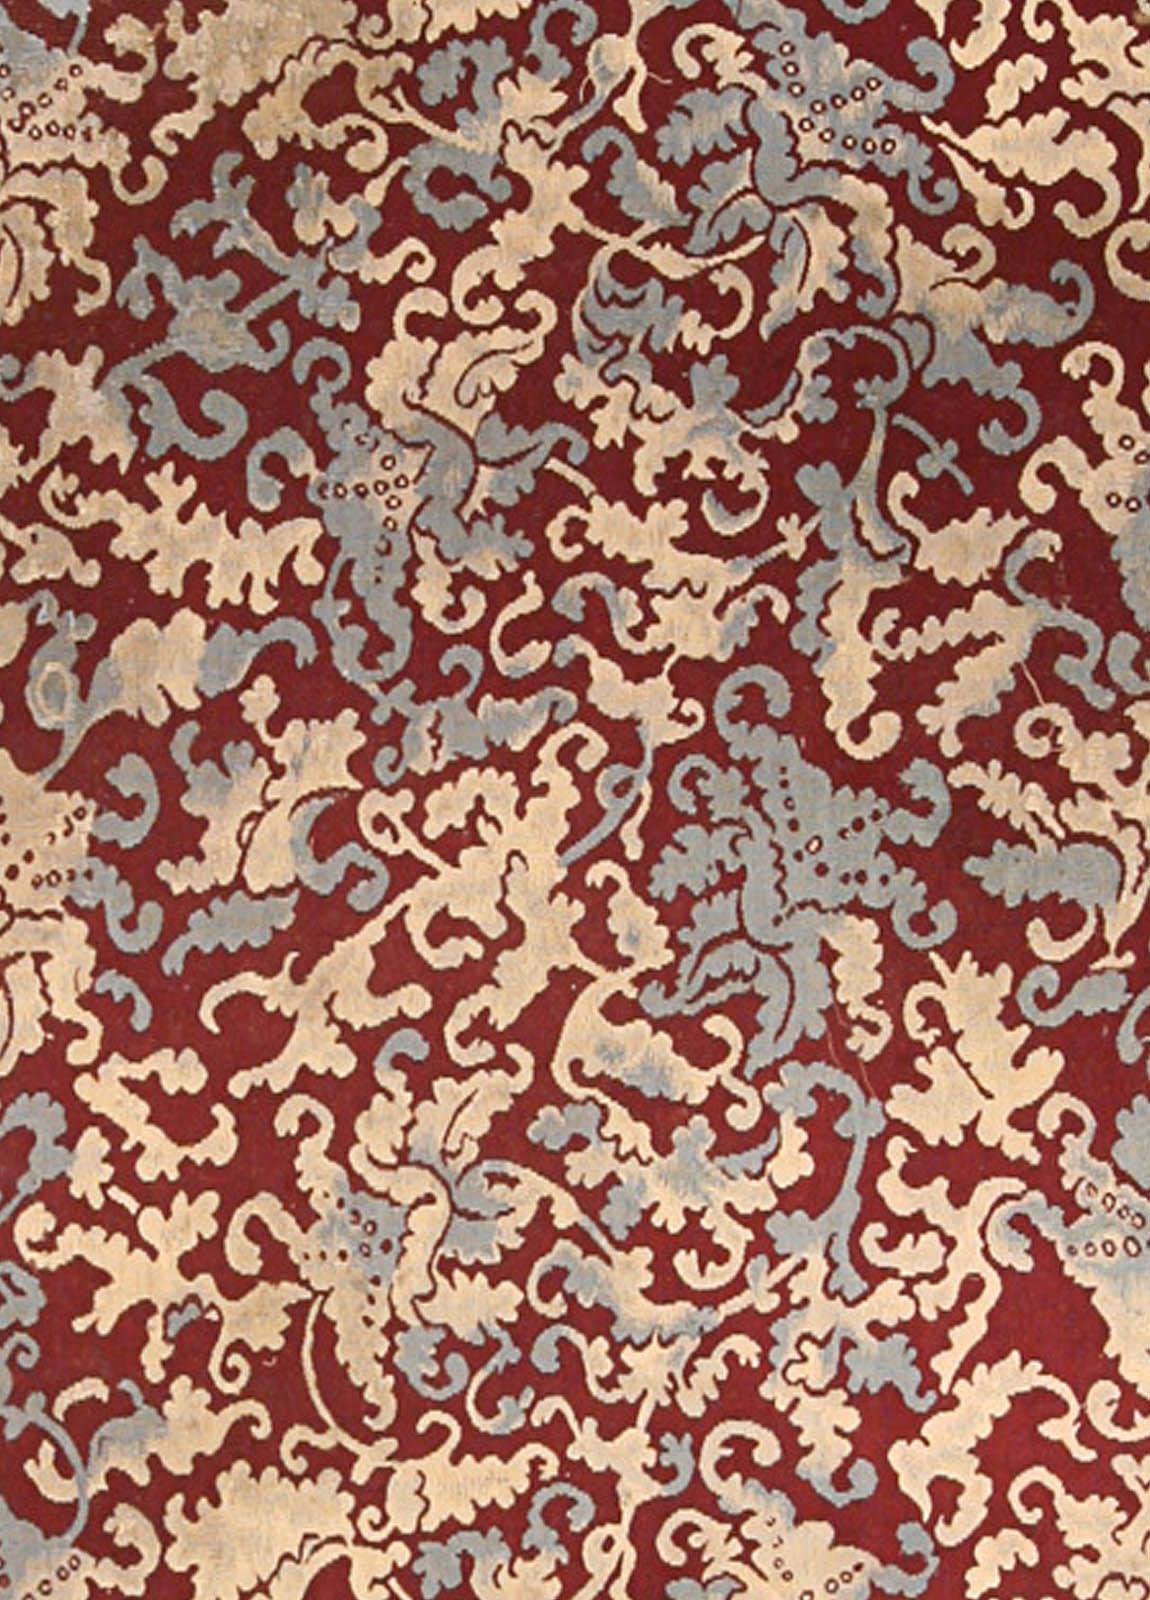 Antique French Aubusson Botanic handmade wool rug.
Size: 12.6